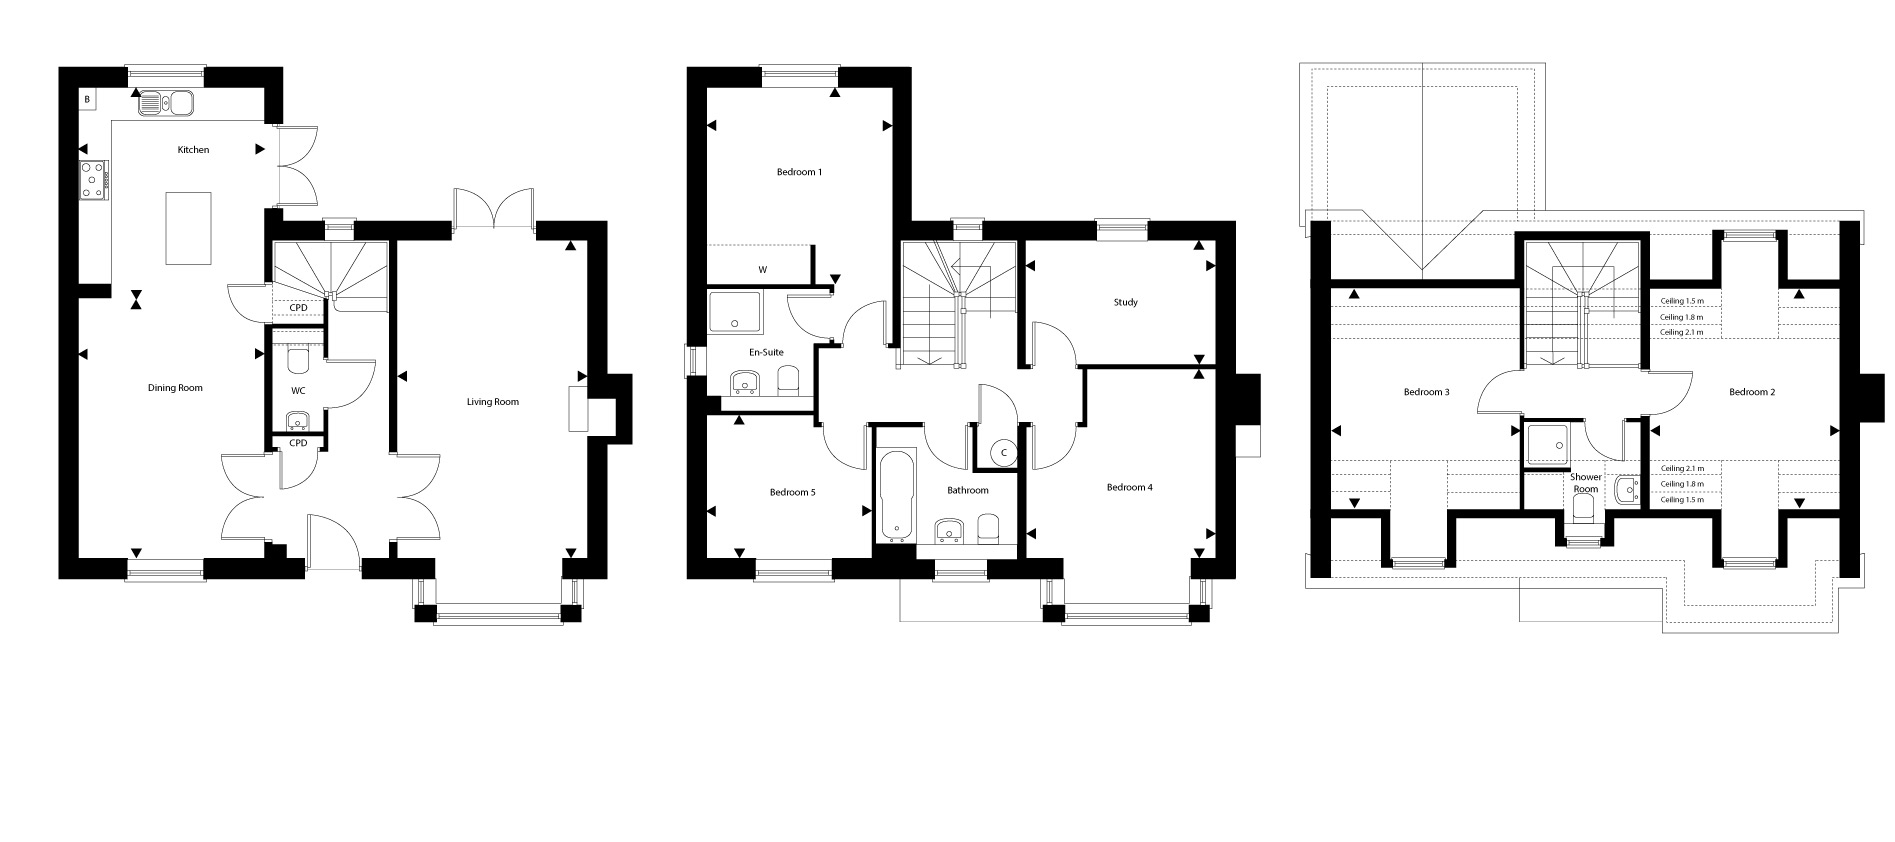 Plot 31 – The Pemberley Floor plan